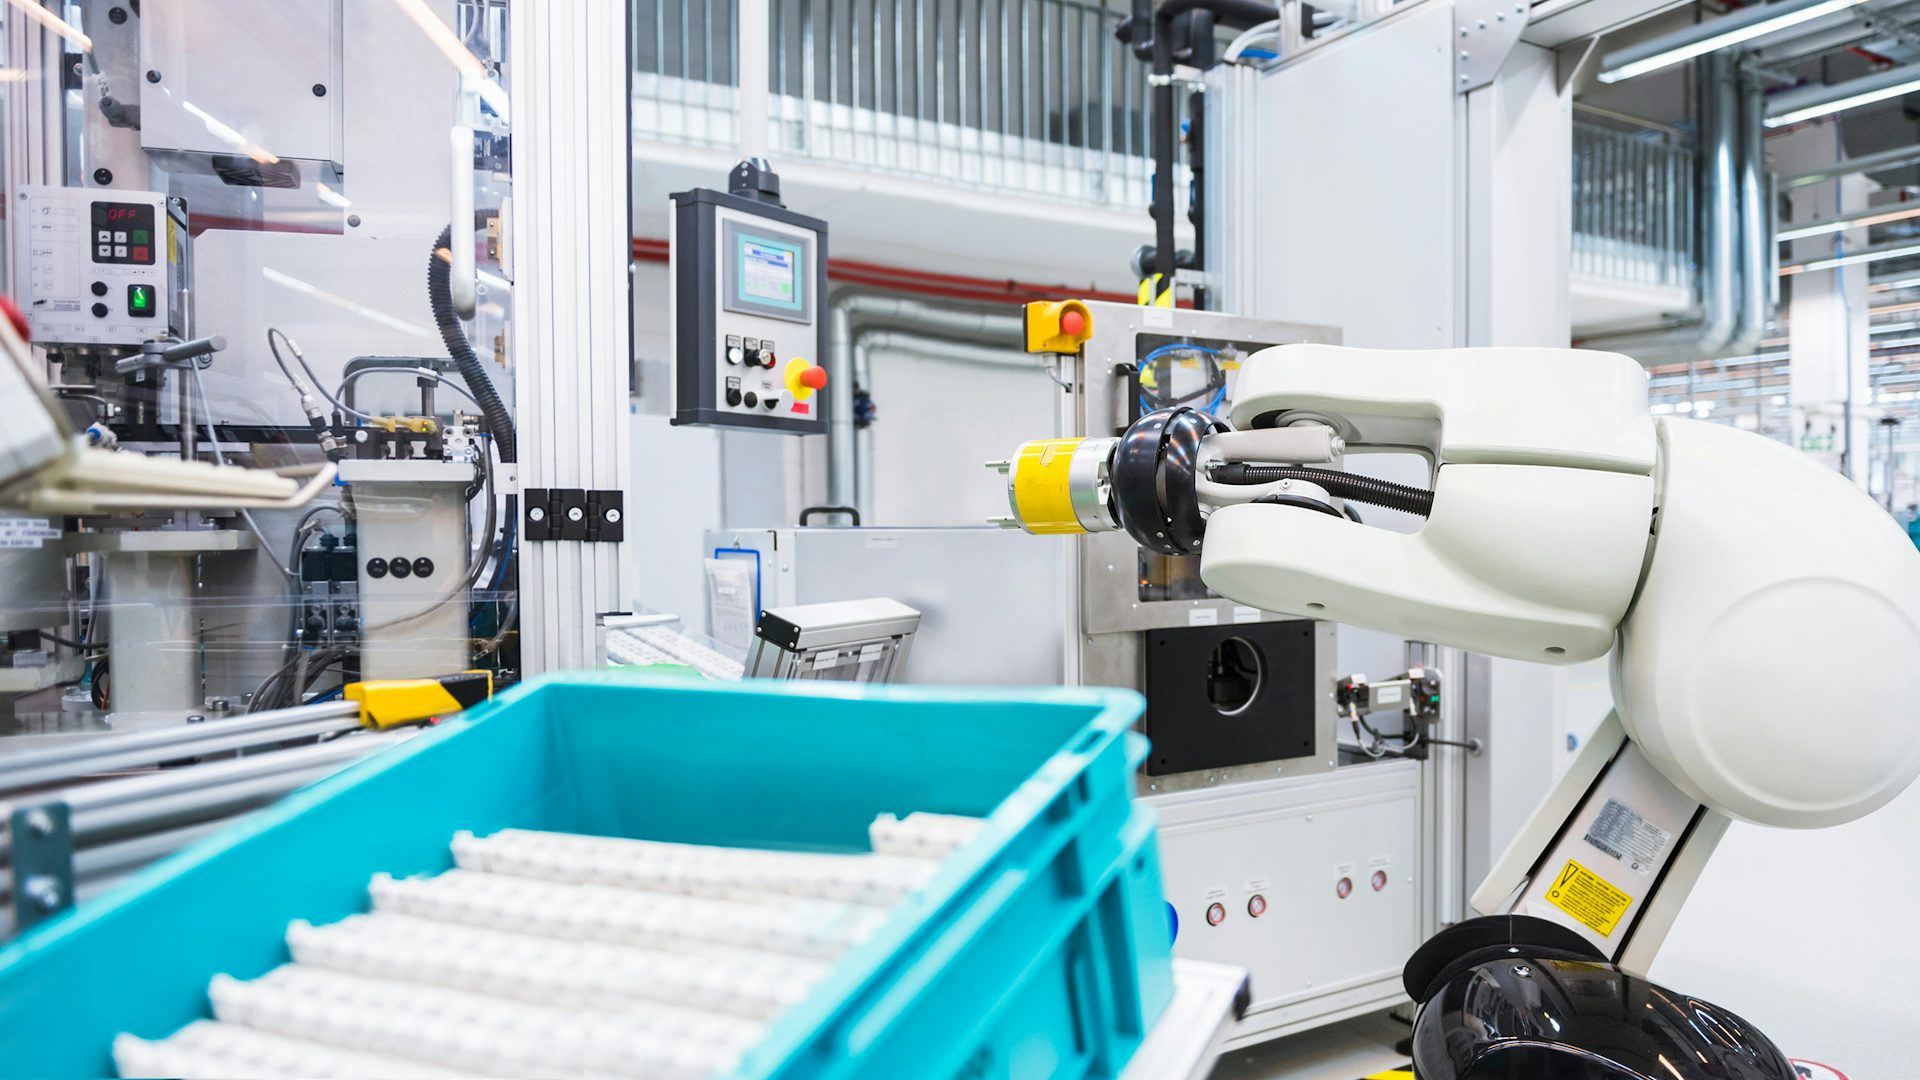 Ein Roboter, der Aufgaben in einer Produktionsstätte ausführt.